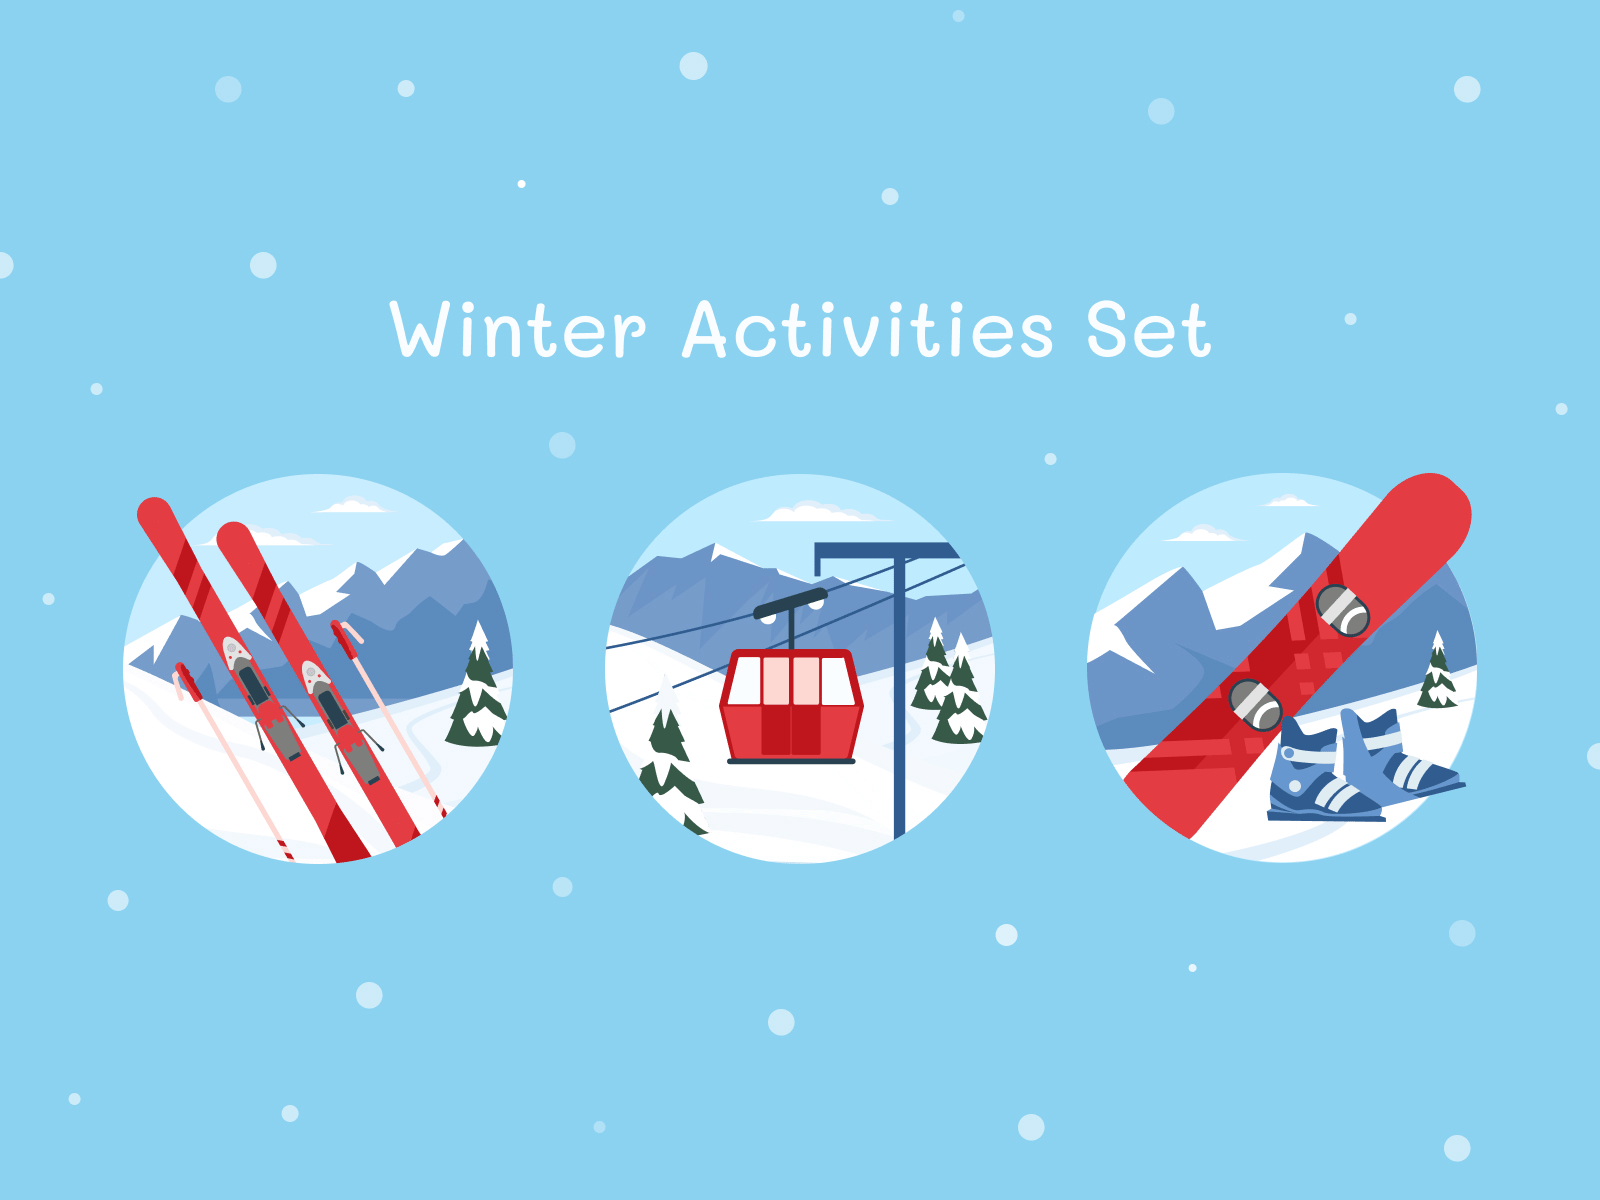 Outdoor Activity - Winter Activities Set